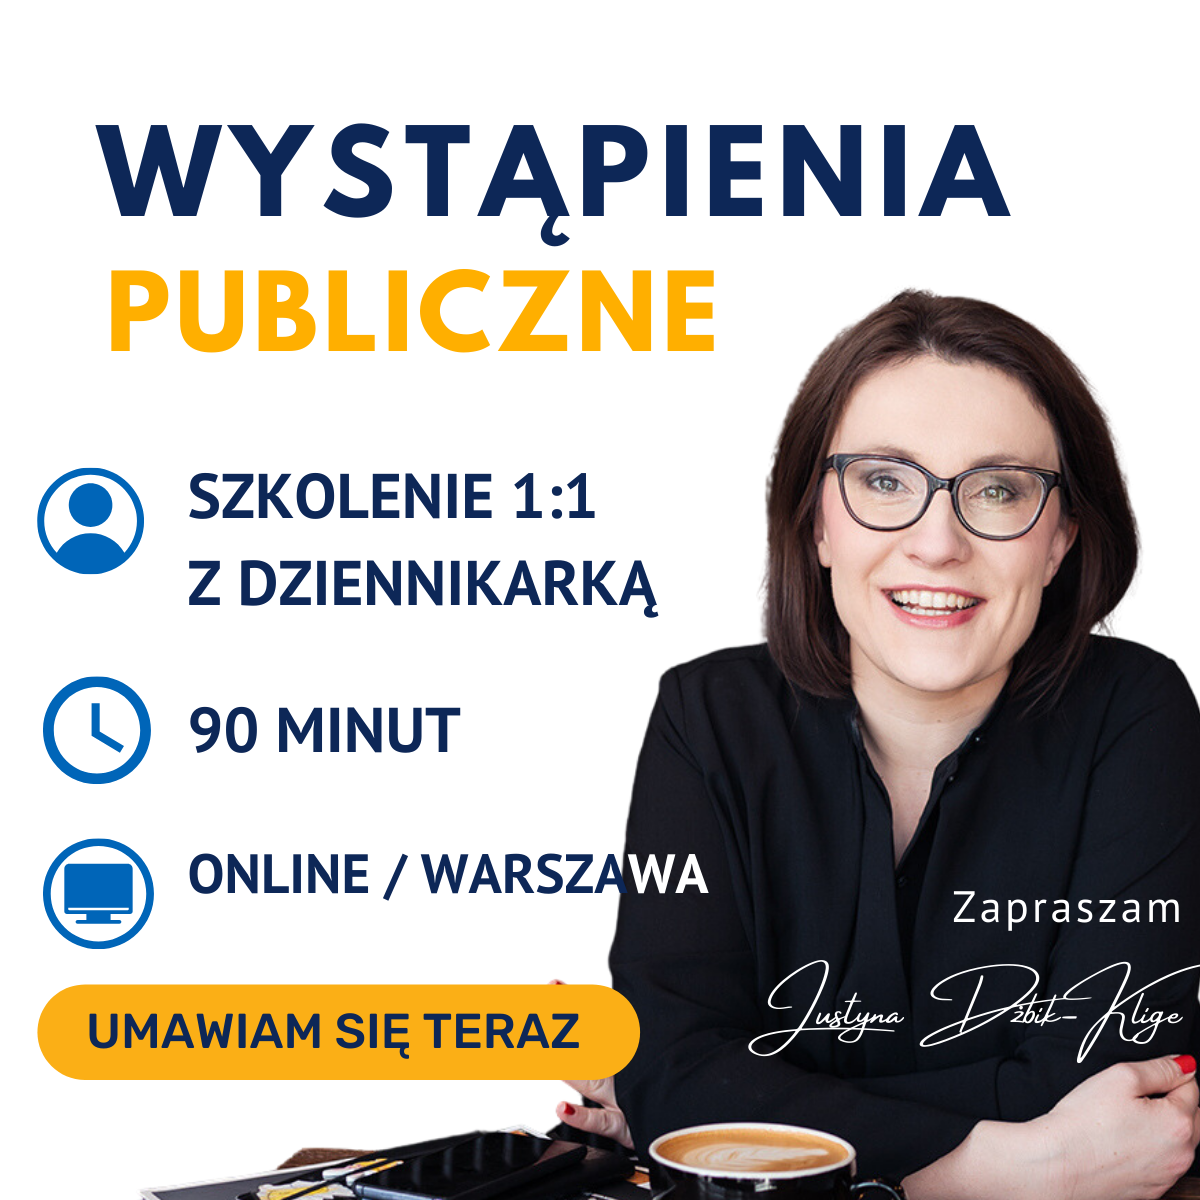 Wystąpienia publiczne – Justyna Dżbik-Kluge